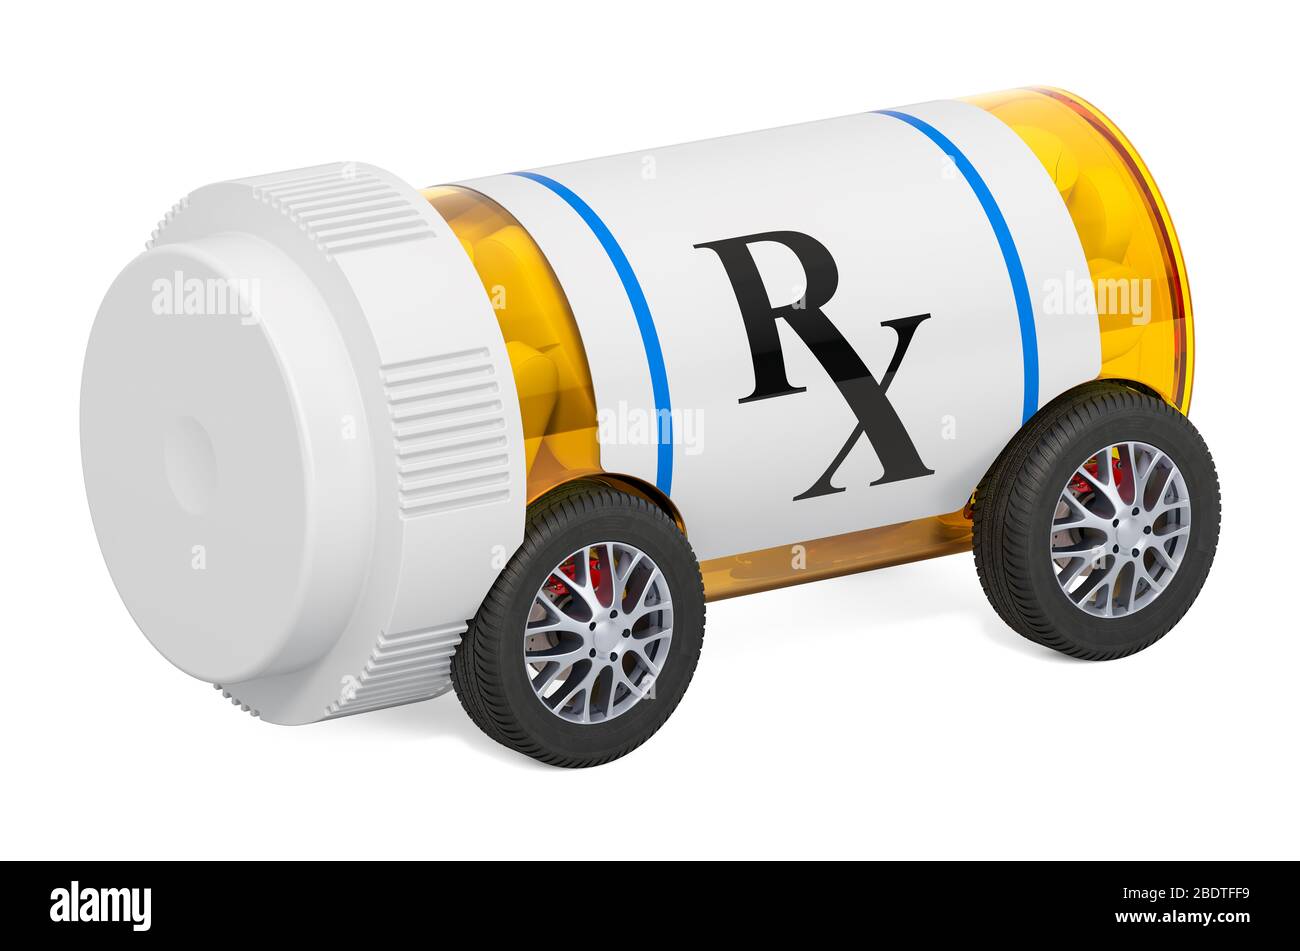 Somministrazione di farmaci. Flacone medicale con ruote per auto, rendering 3D isolato su sfondo bianco Foto Stock